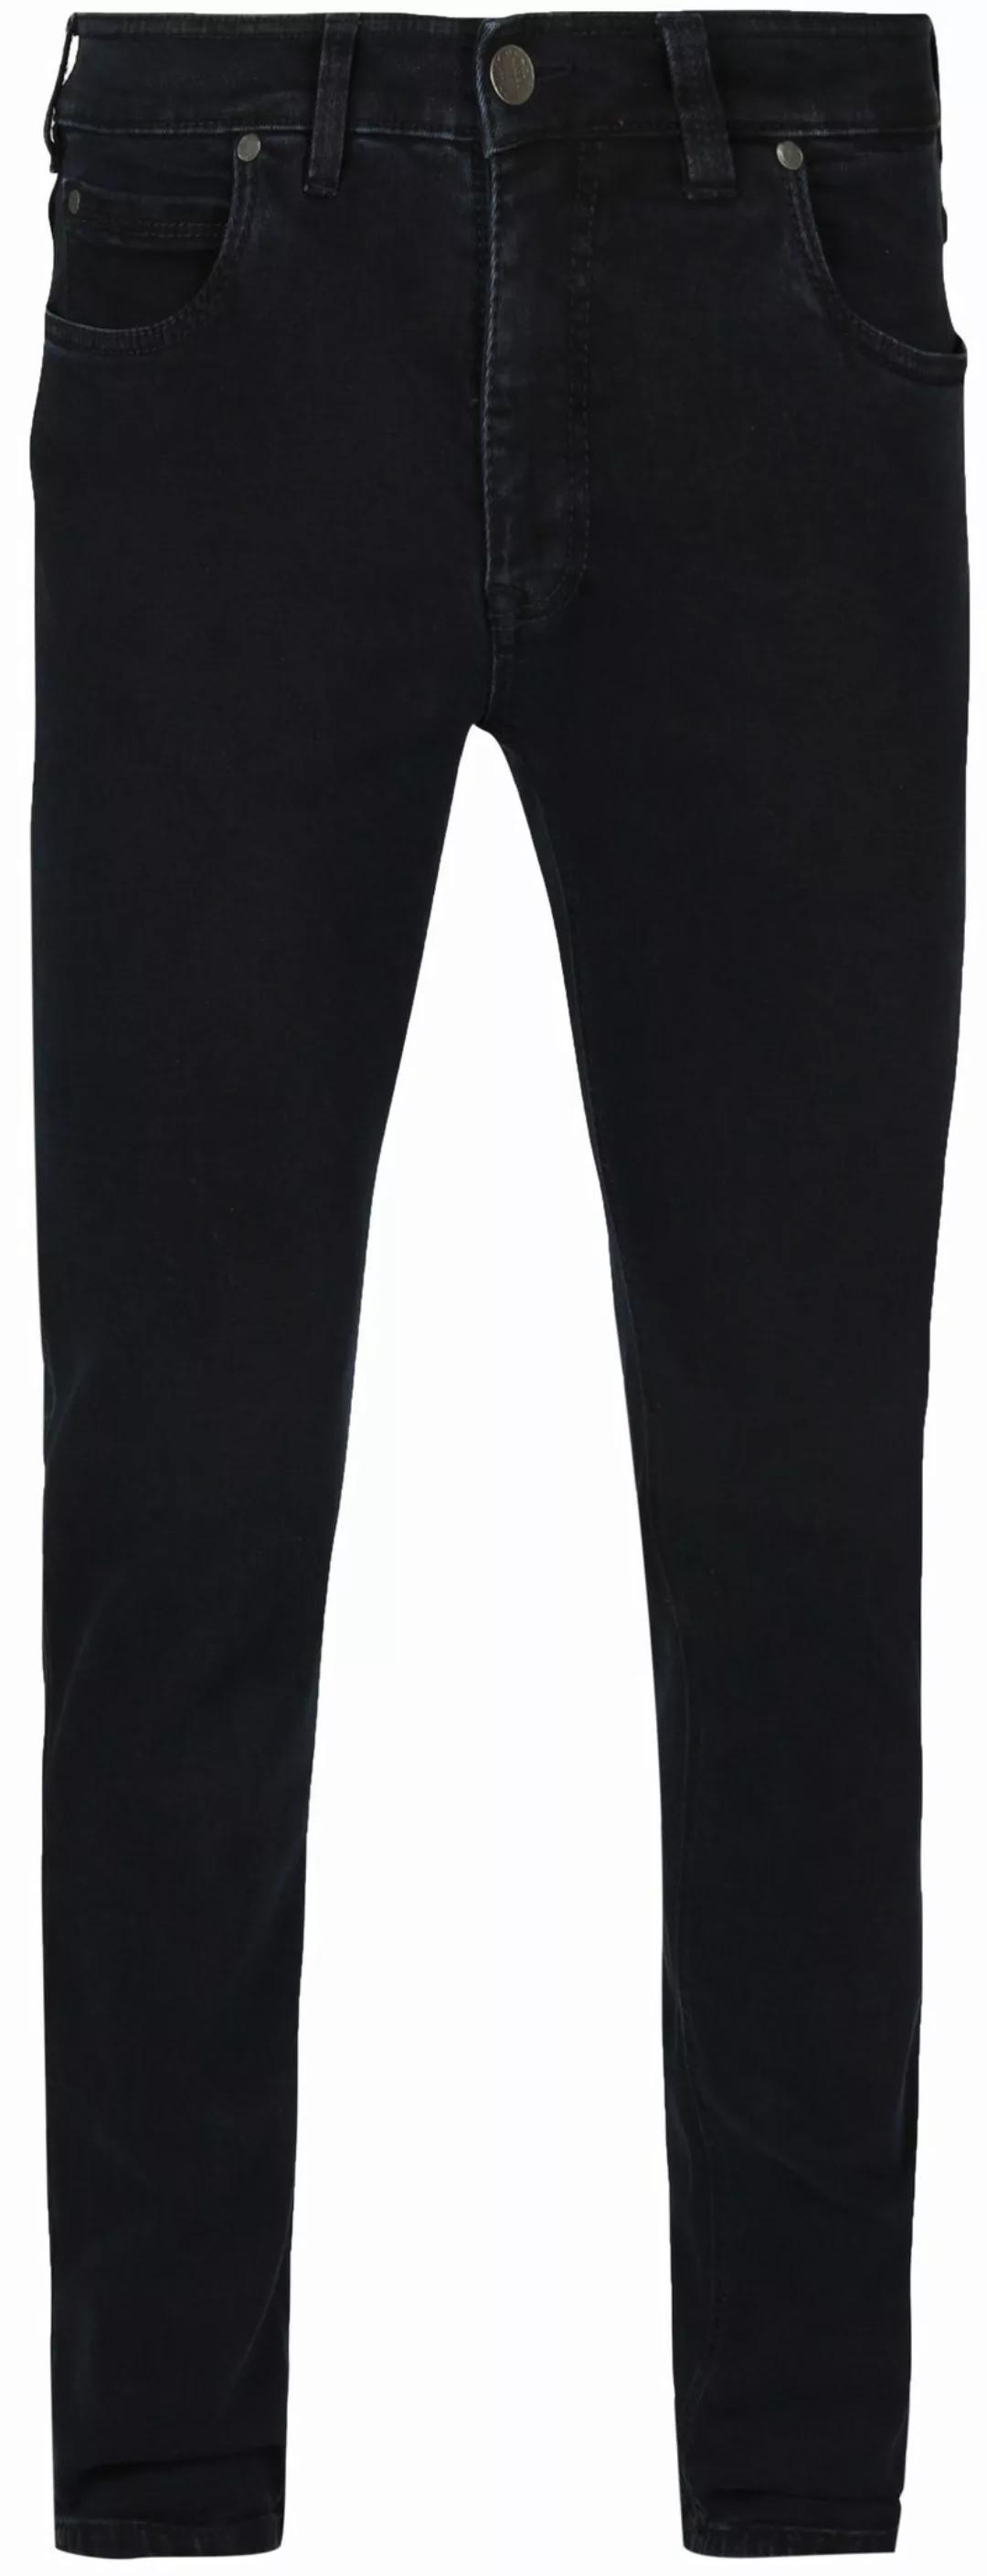 Gardeur Batu Jeans Rinse Navy - Größe W 31 - L 32 günstig online kaufen